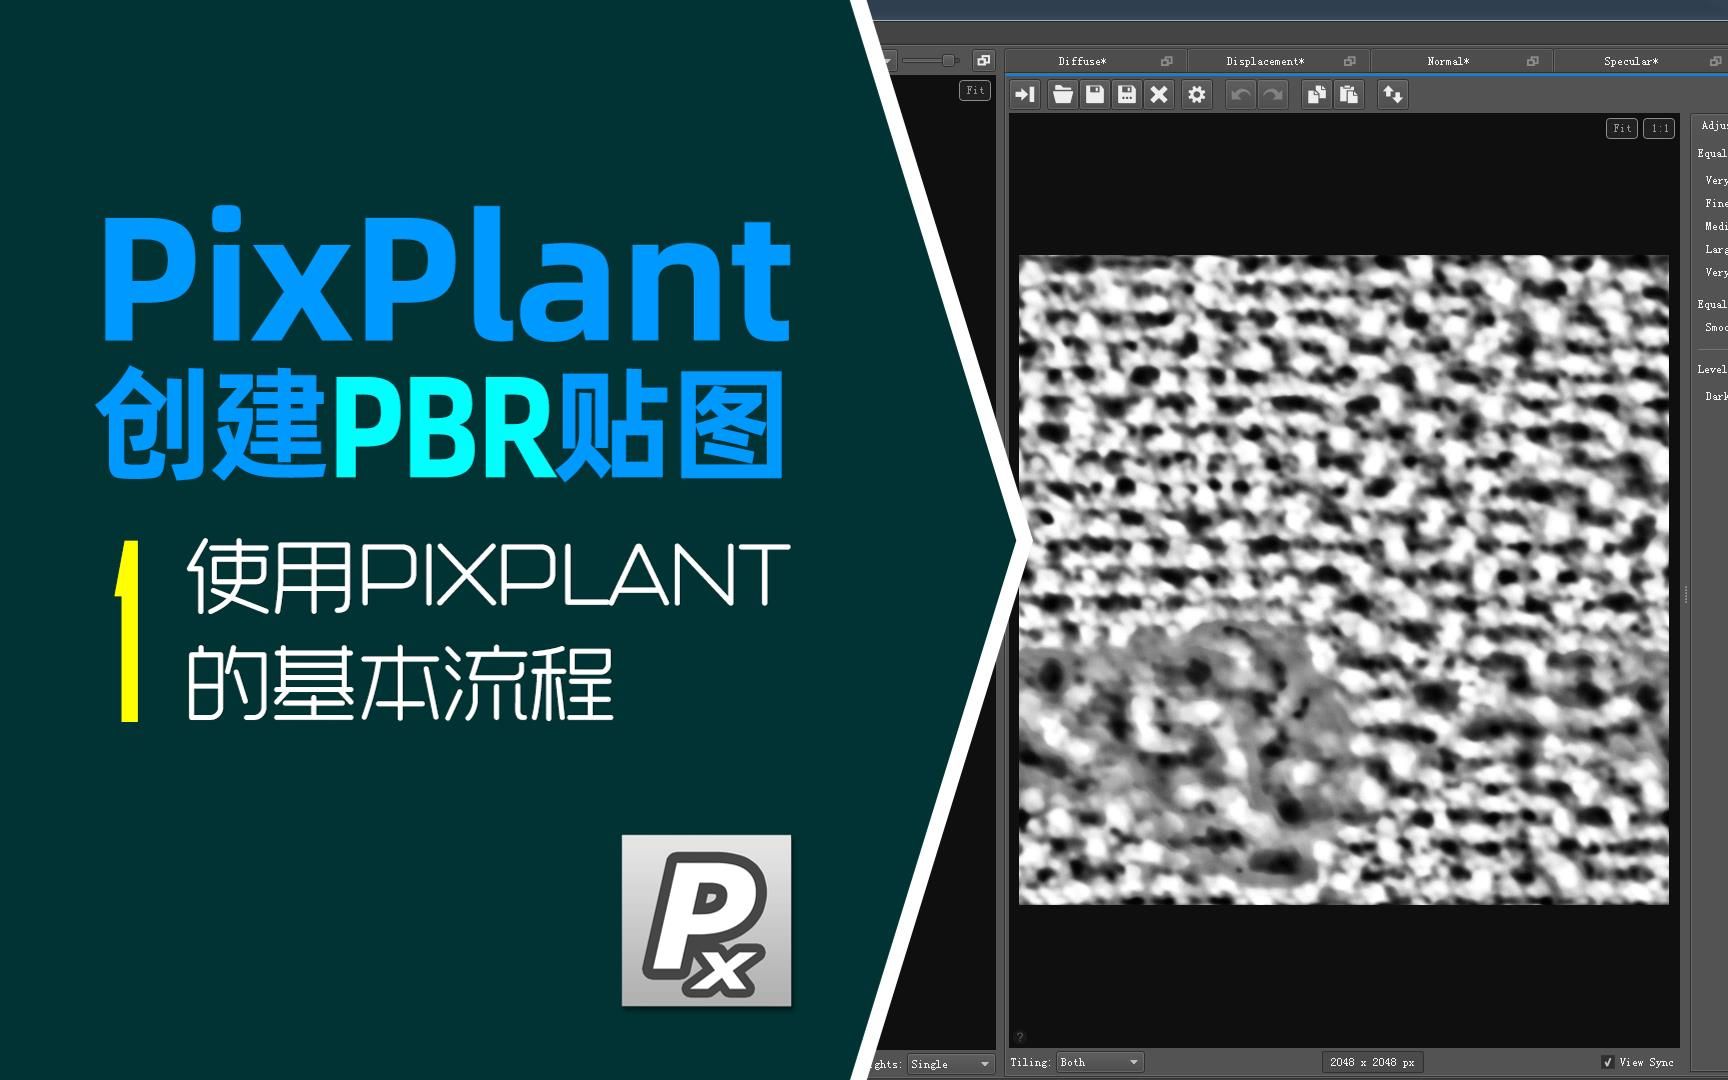 pixplant 2.1.68 plugin for photoshop cc 19.1